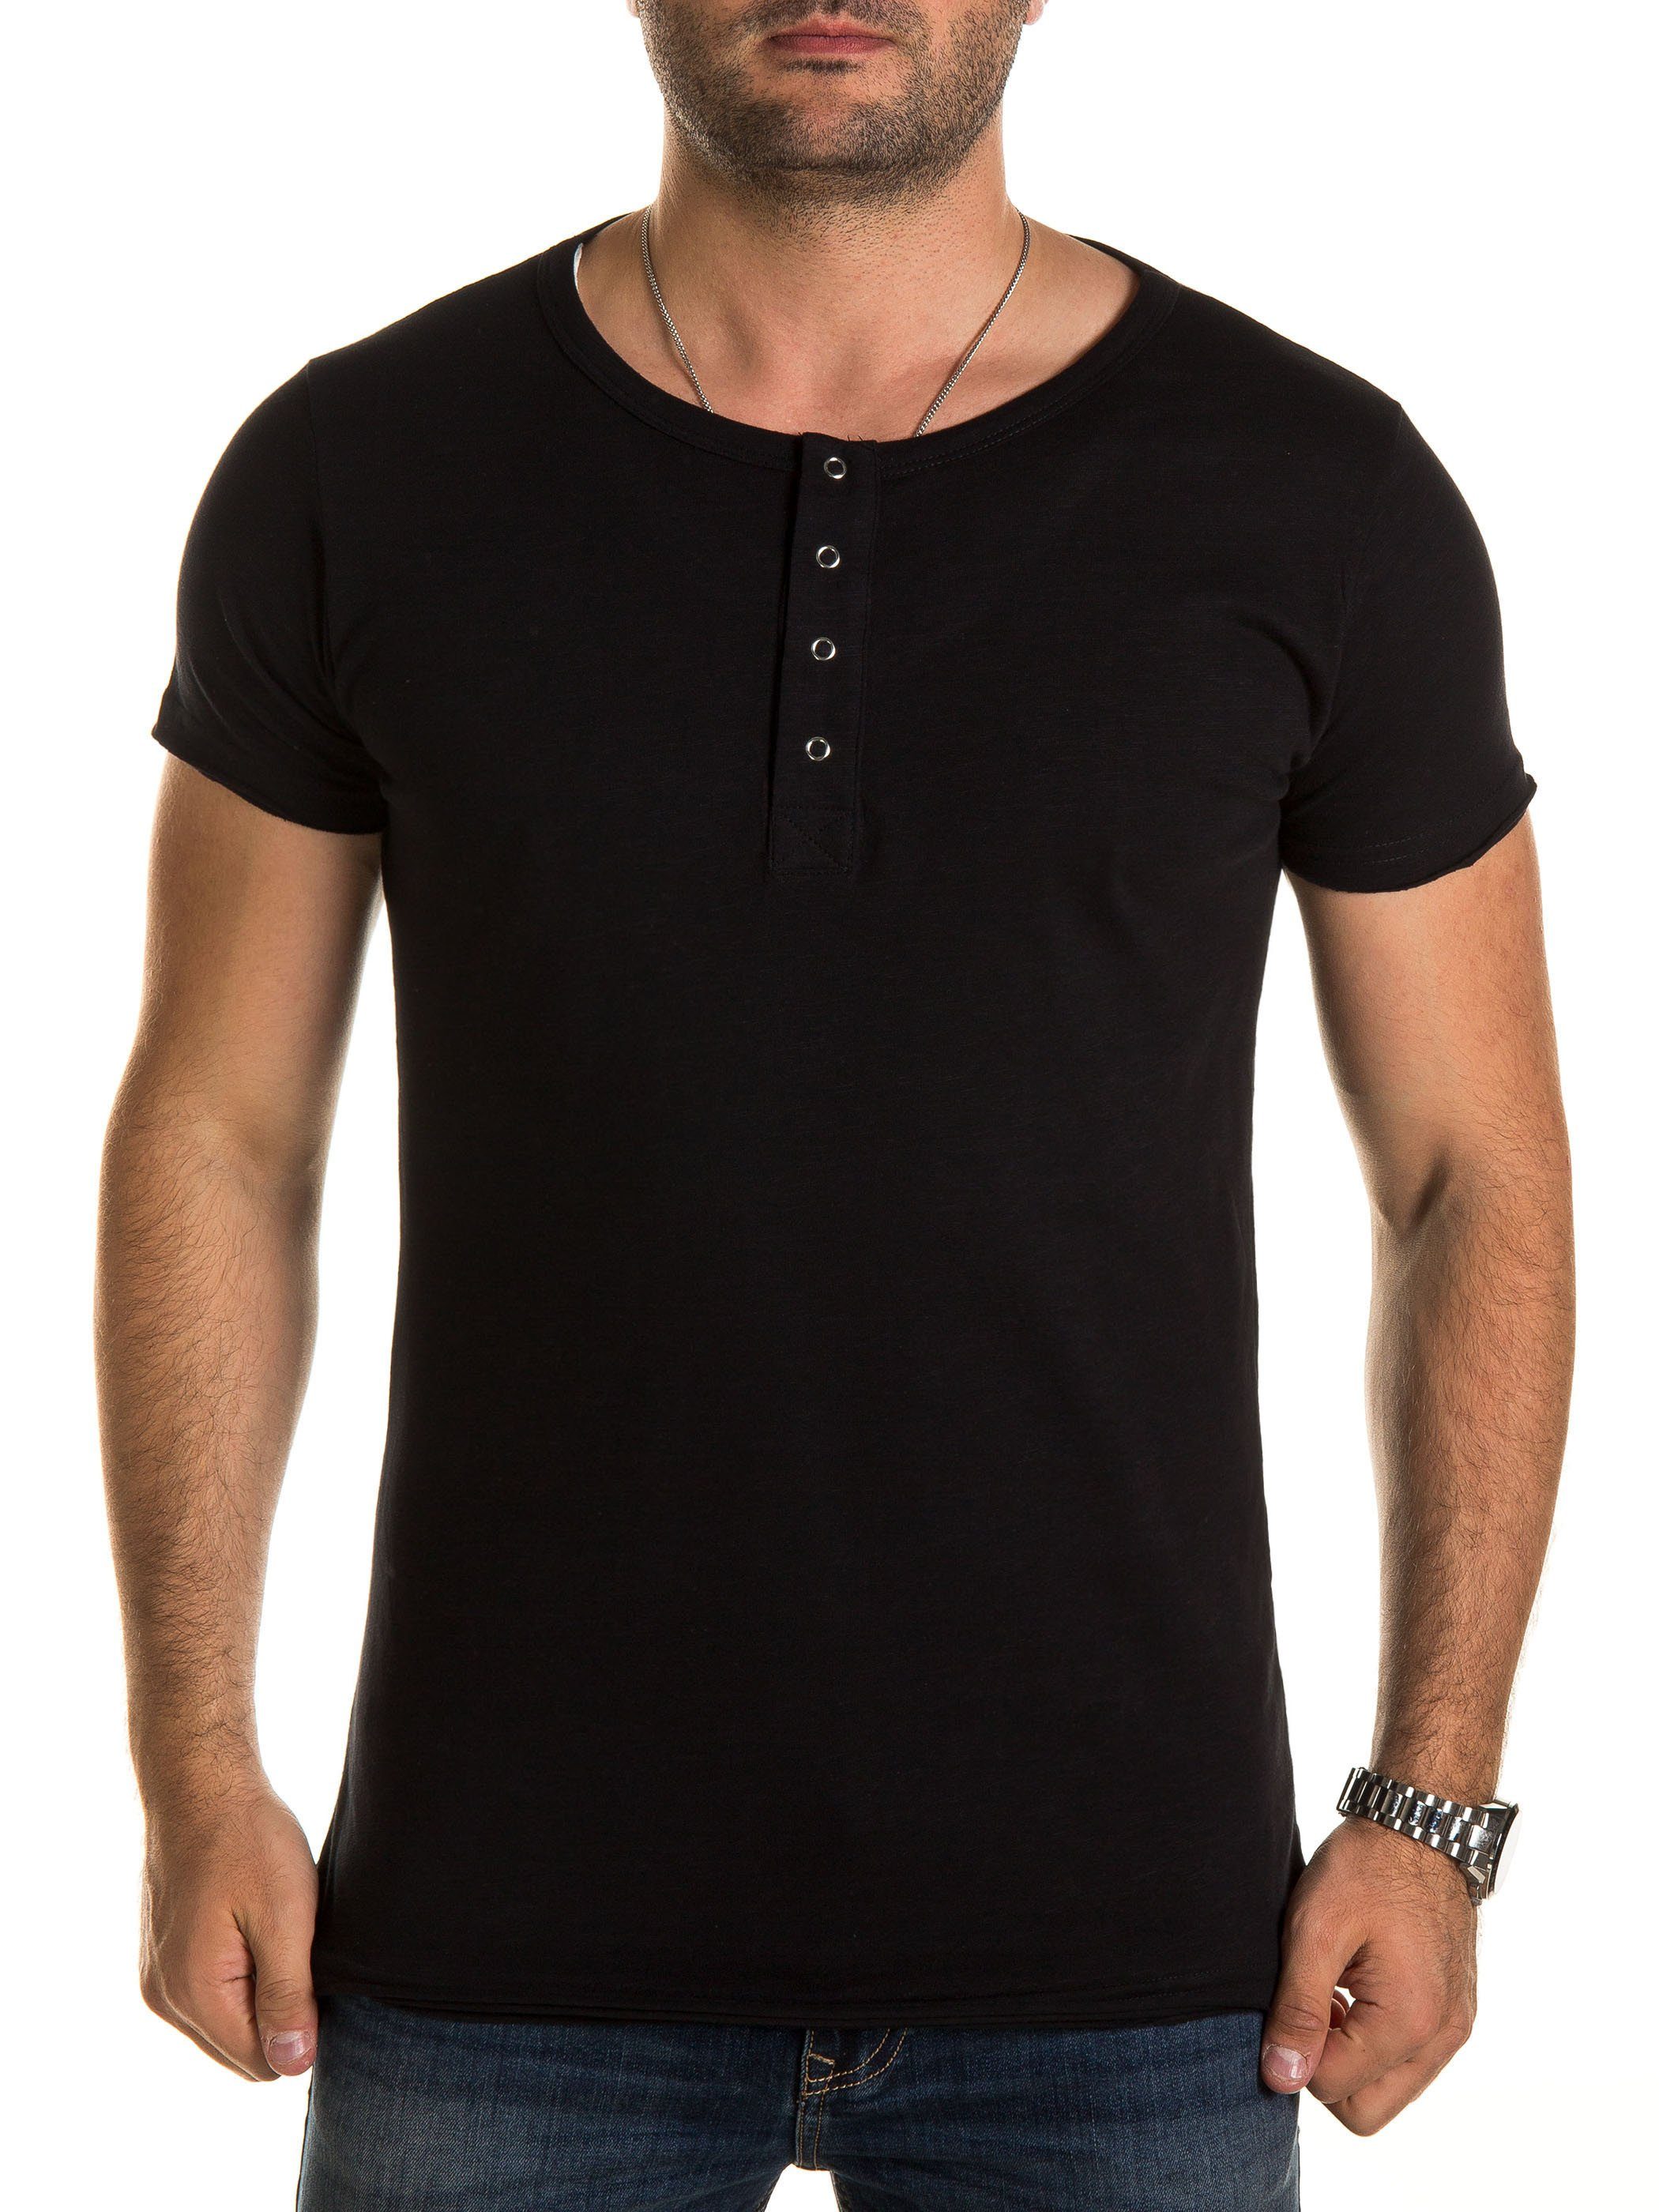 WOTEGA T-Shirt V-Neck Double Layer T-Shirt Pete (Packung) V-Neck Double Layer T-Shirt Pete Schwarz (black 194004)